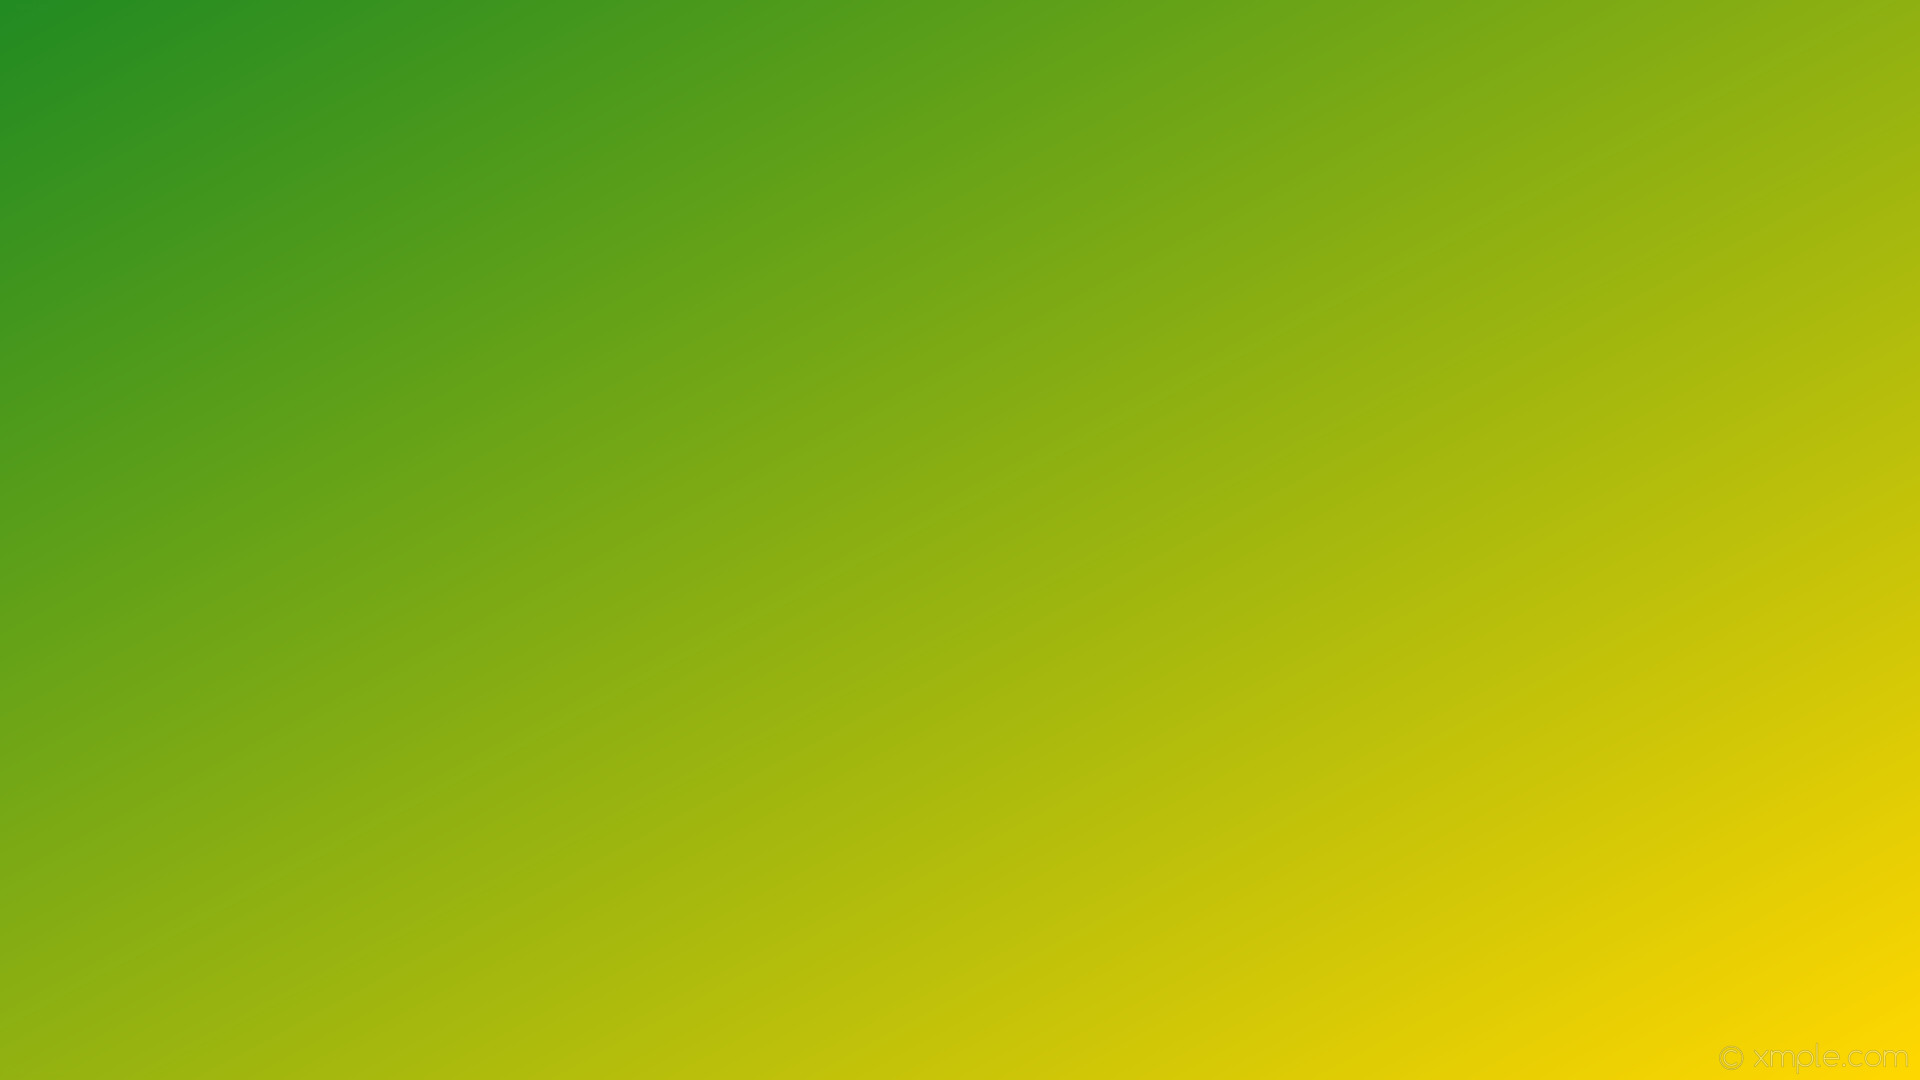 1920x1080 wallpaper gradient green linear yellow forest green gold #228b22 #ffd700  150Â°